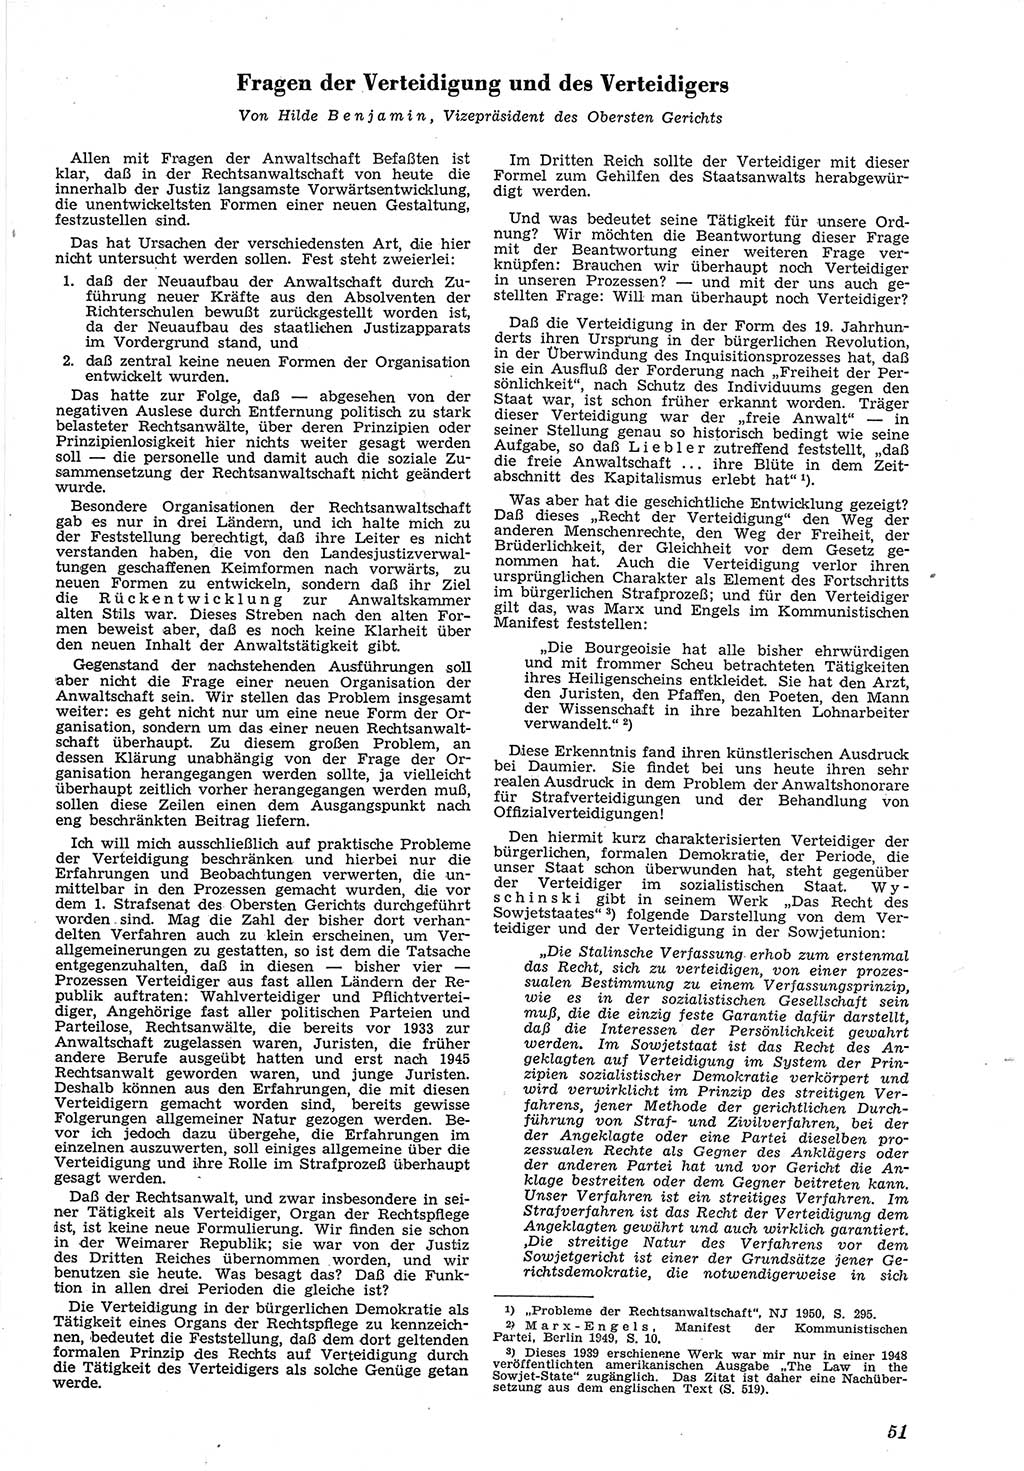 Neue Justiz (NJ), Zeitschrift für Recht und Rechtswissenschaft [Deutsche Demokratische Republik (DDR)], 5. Jahrgang 1951, Seite 51 (NJ DDR 1951, S. 51)